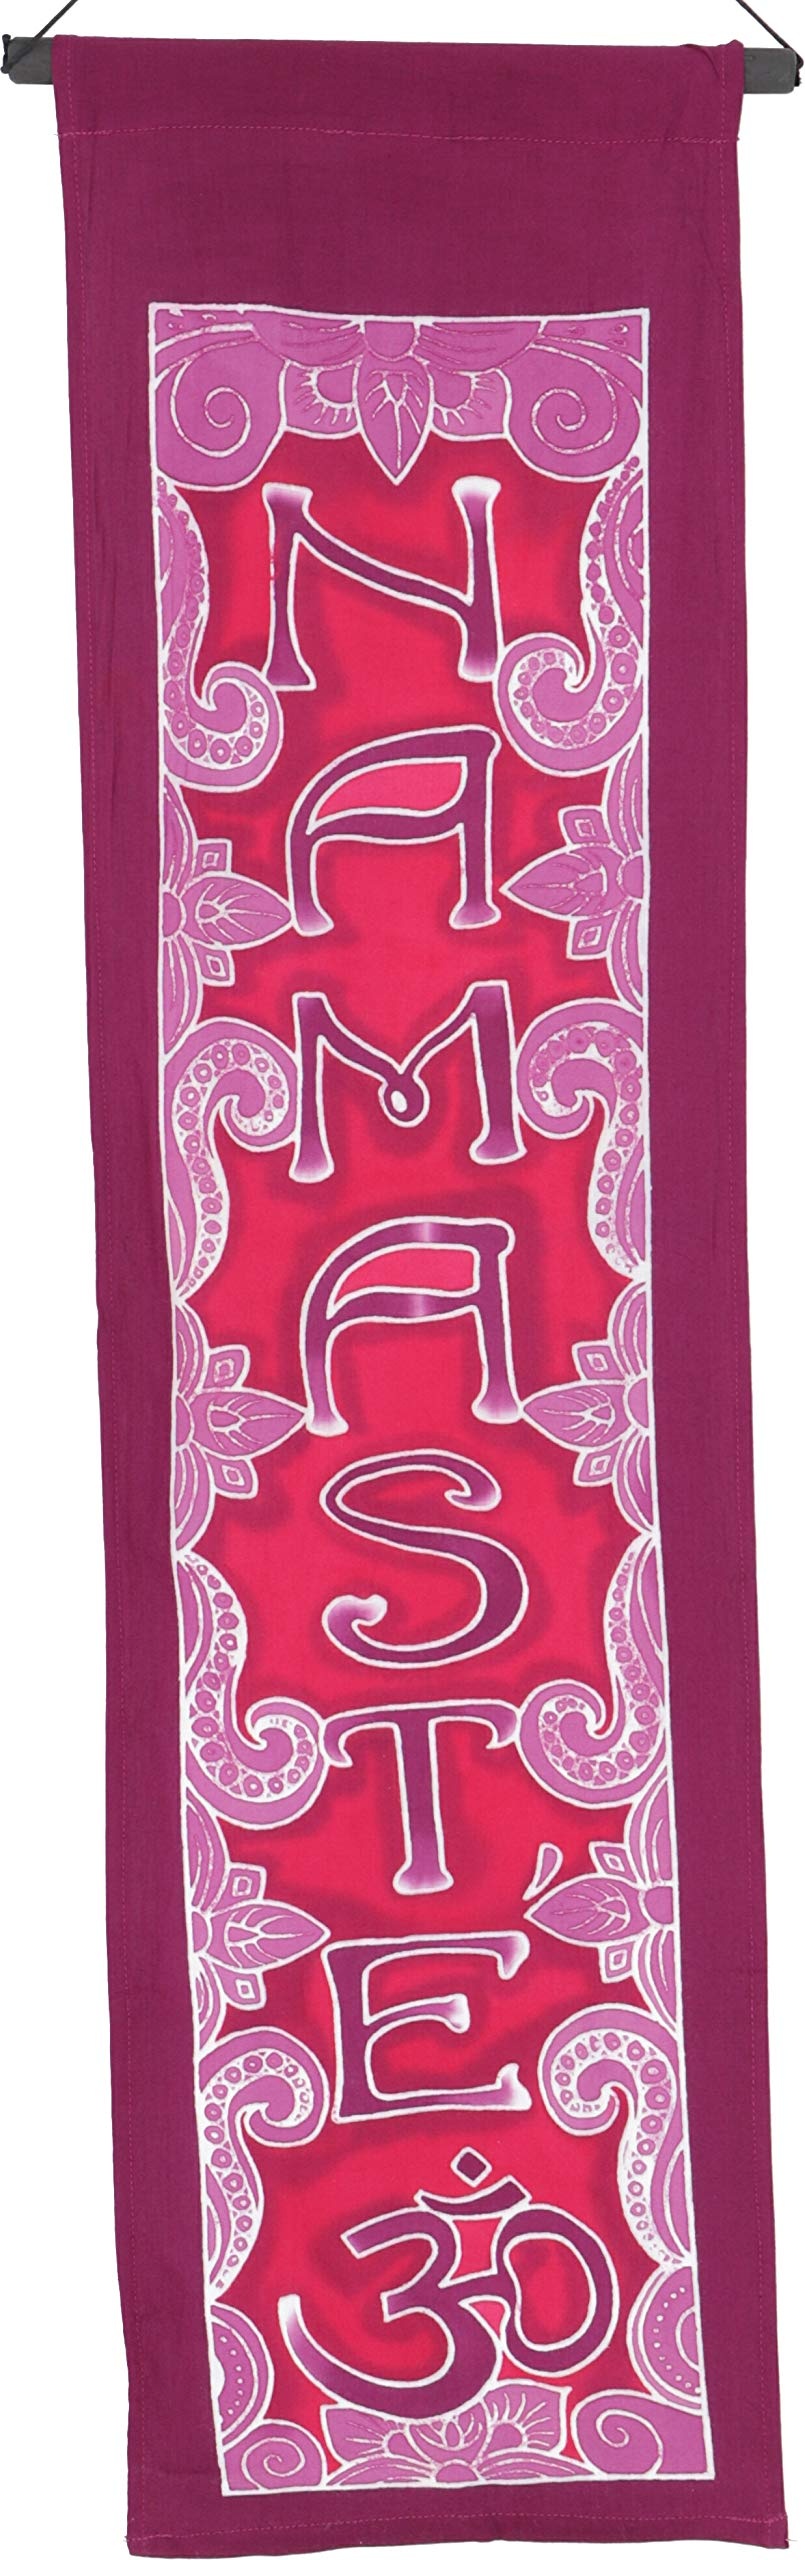 GURU SHOP Boho Wandbehang, Batik Wandschmuck - Namaste Pink, Viskose, 90x30x0,2 cm, Wandtaschen & Wandbehänge